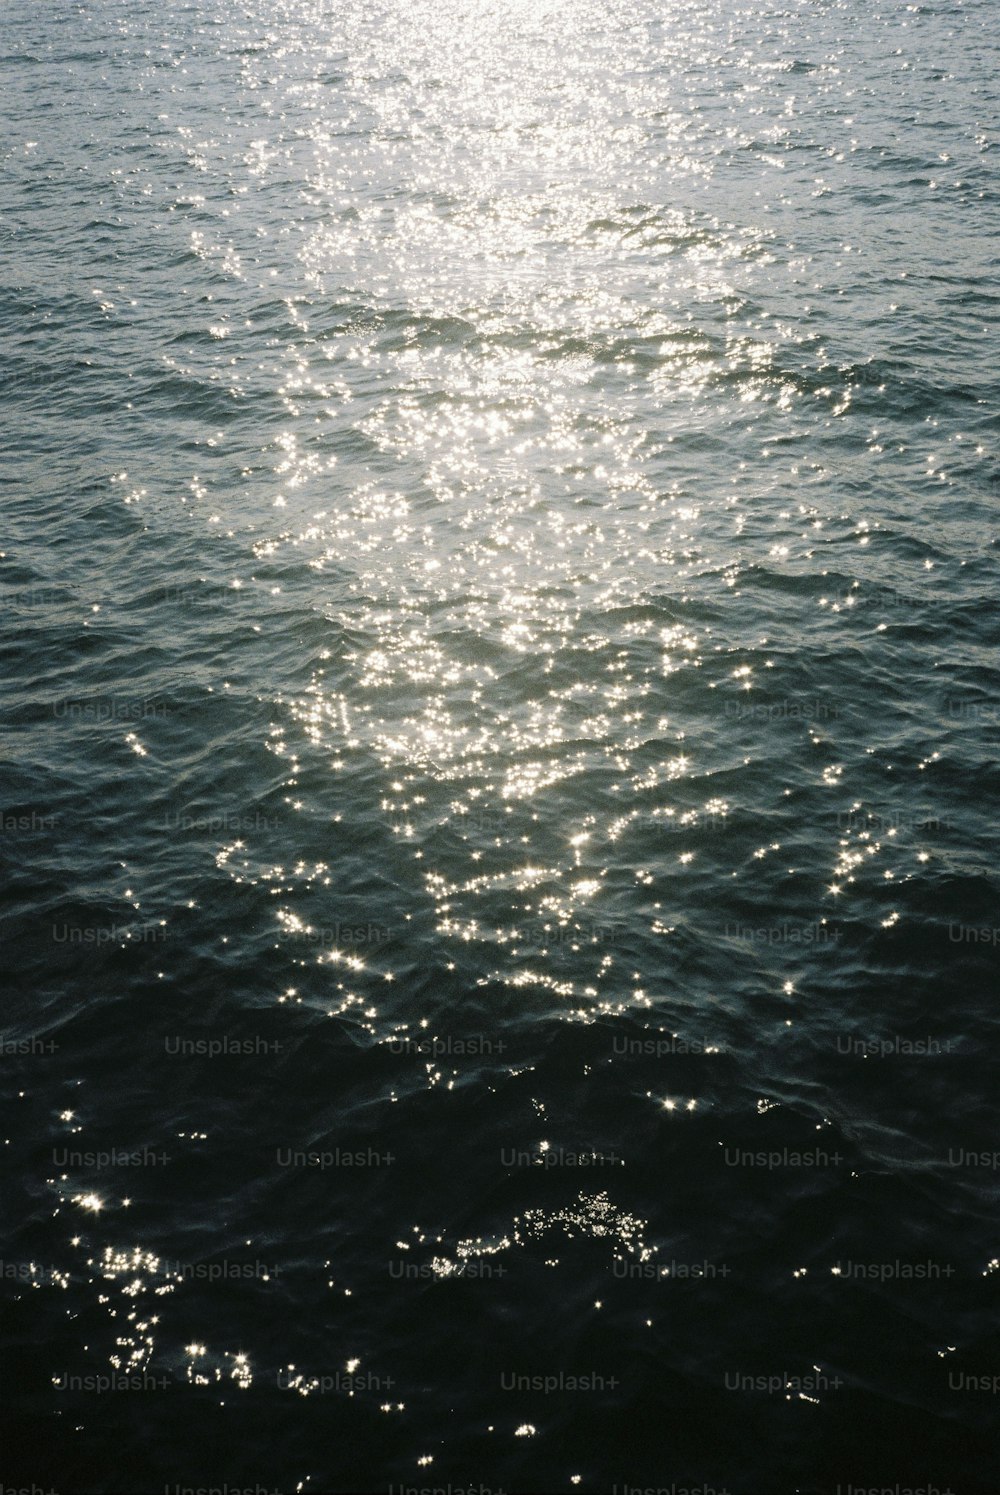 Die Sonne scheint hell auf das Wasser